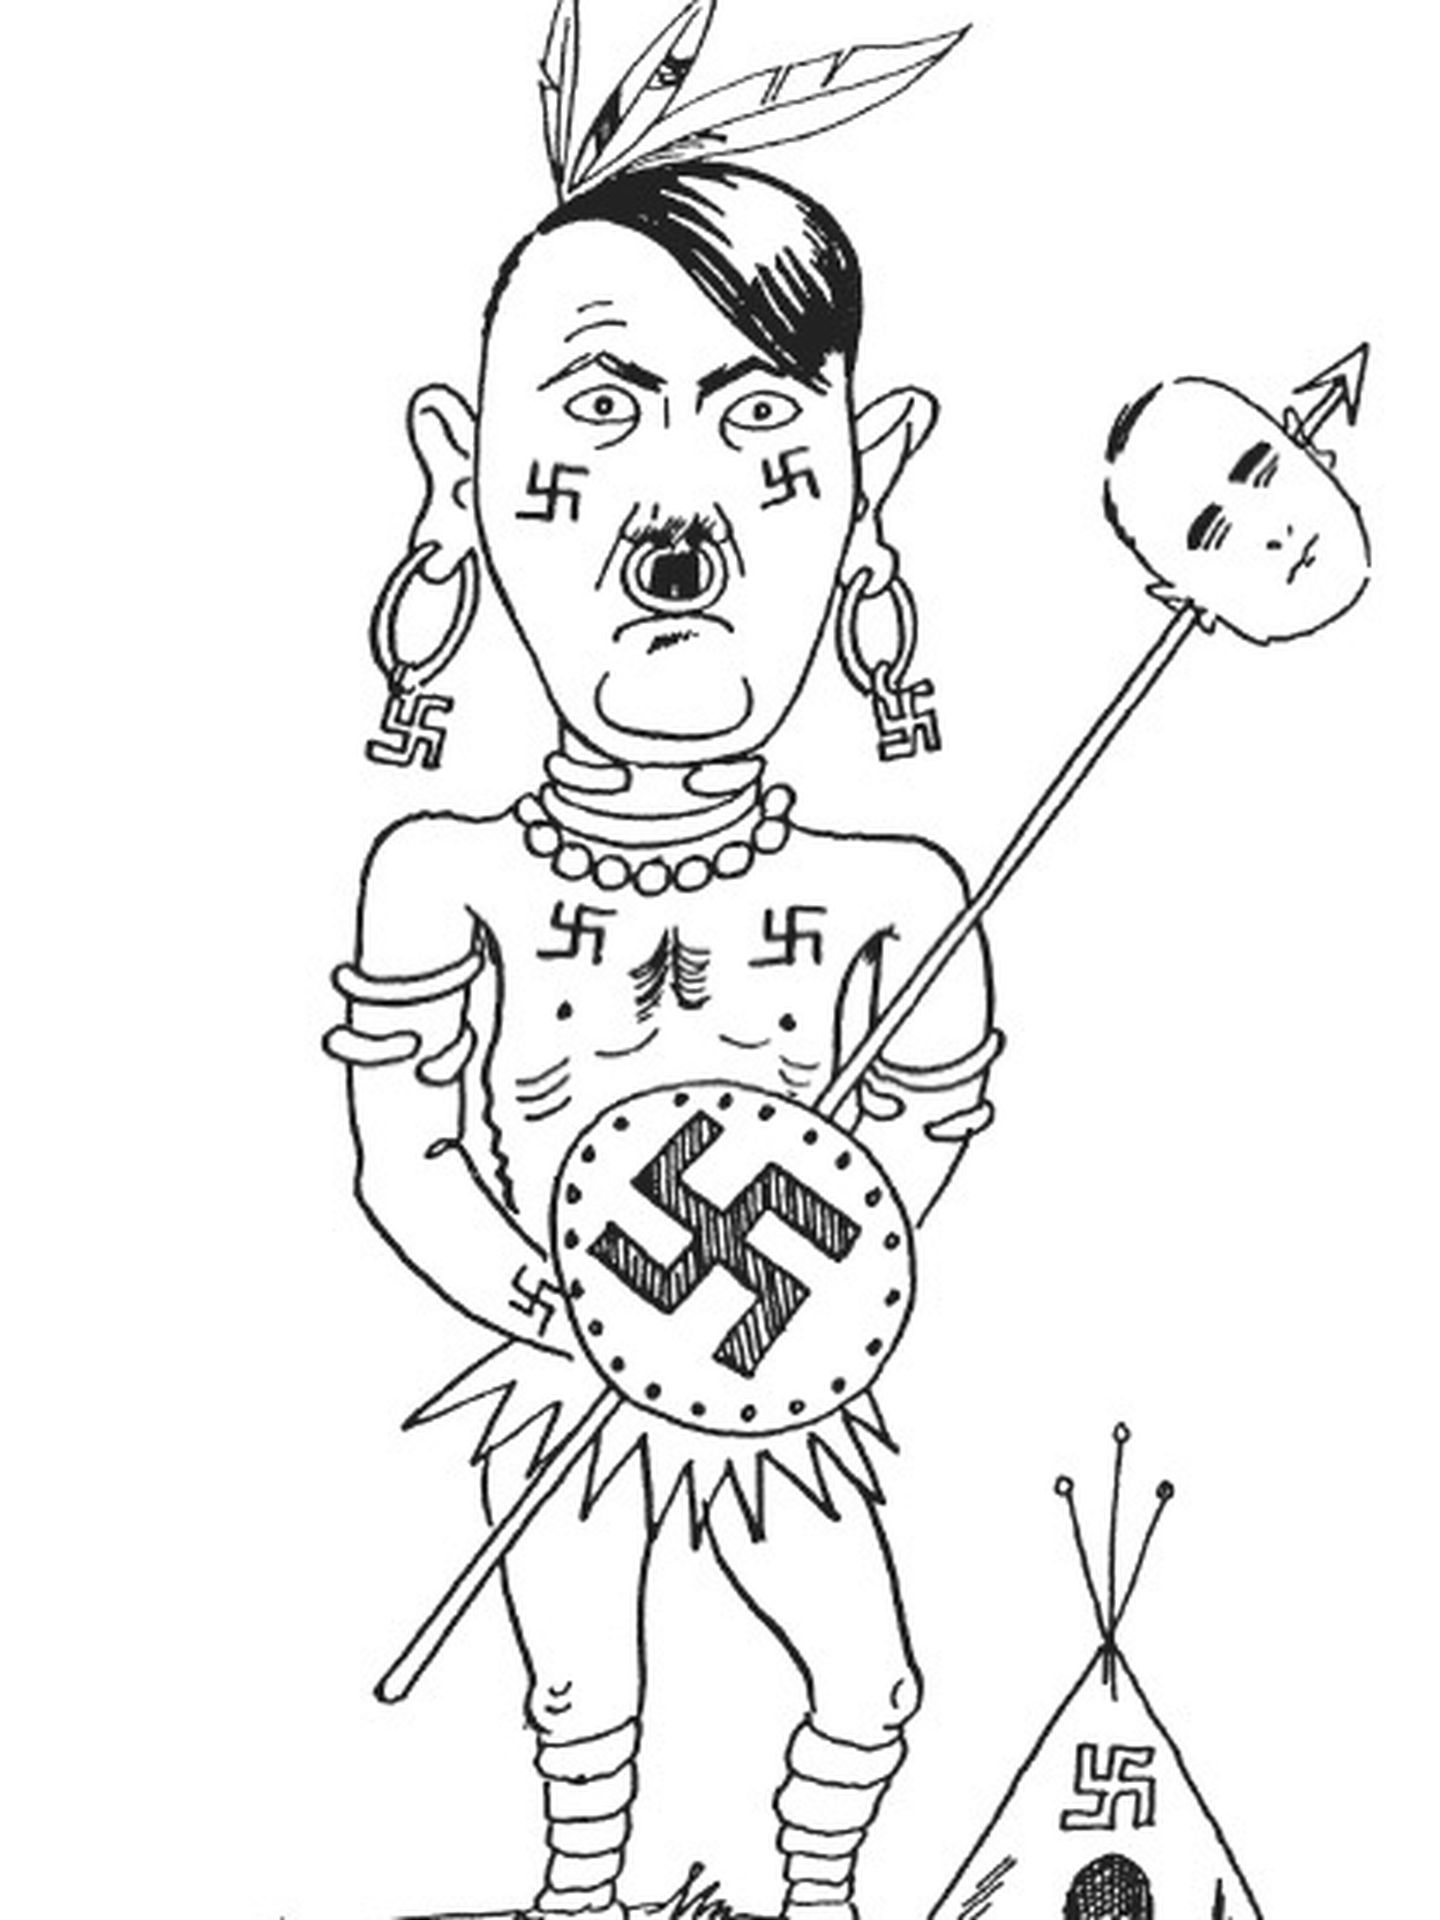 Hitler como piel roja en una caricatura de los años treinta